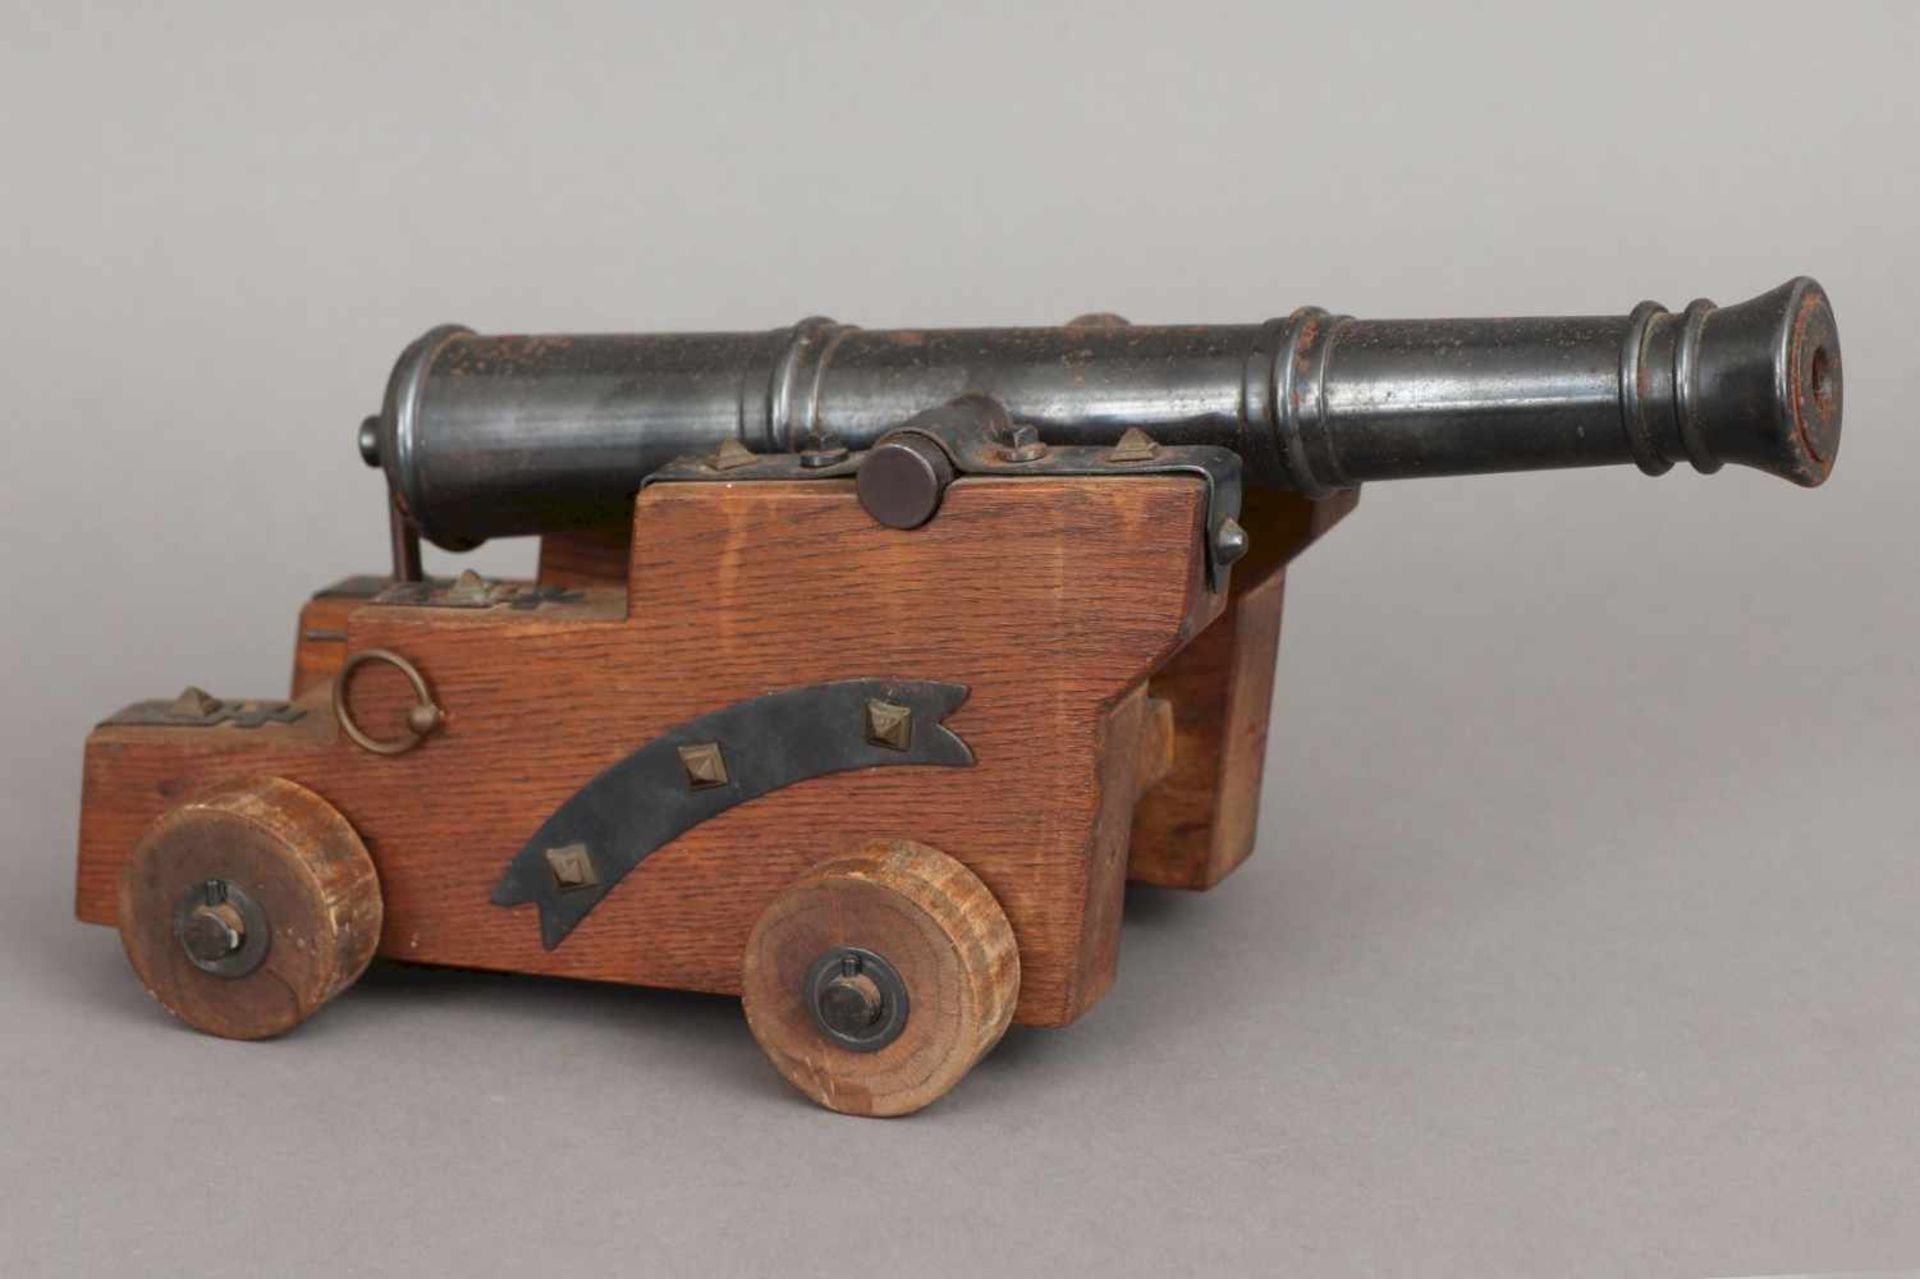 Modell Kanone Eisen, gebläut, und Eichenholz, schiessfähige Kanone auf gestuftem Holzstand mit - Bild 2 aus 4